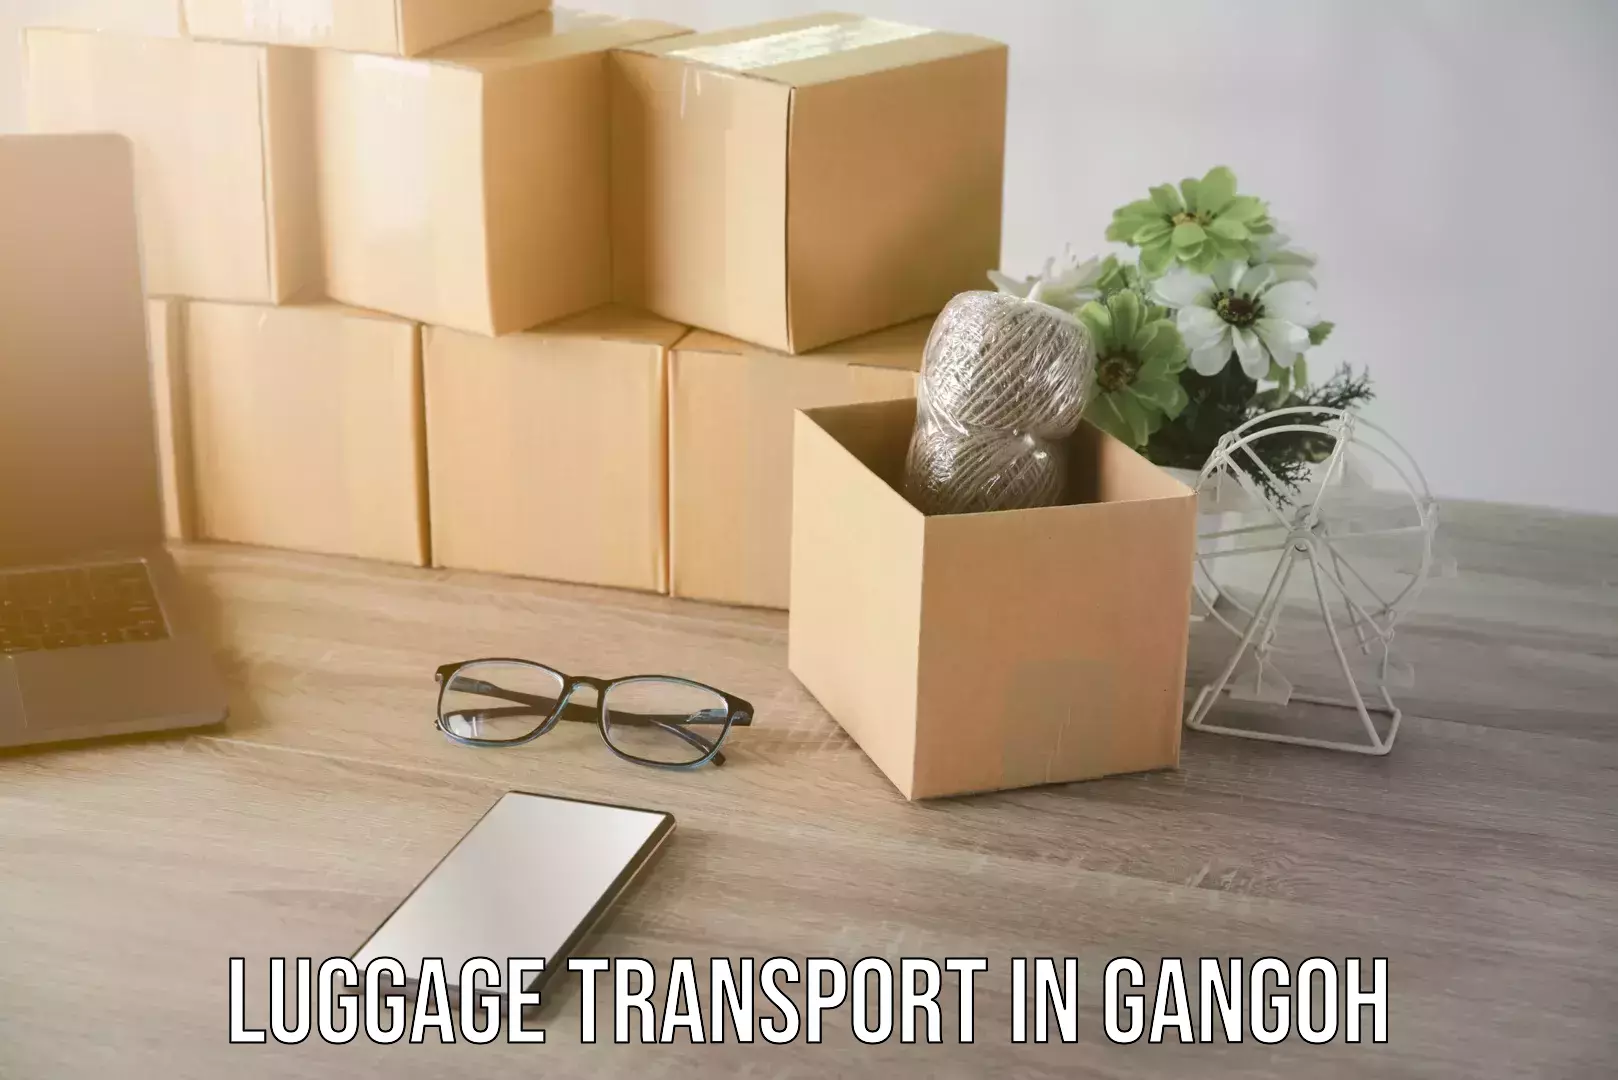 Luggage forwarding service in Gangoh